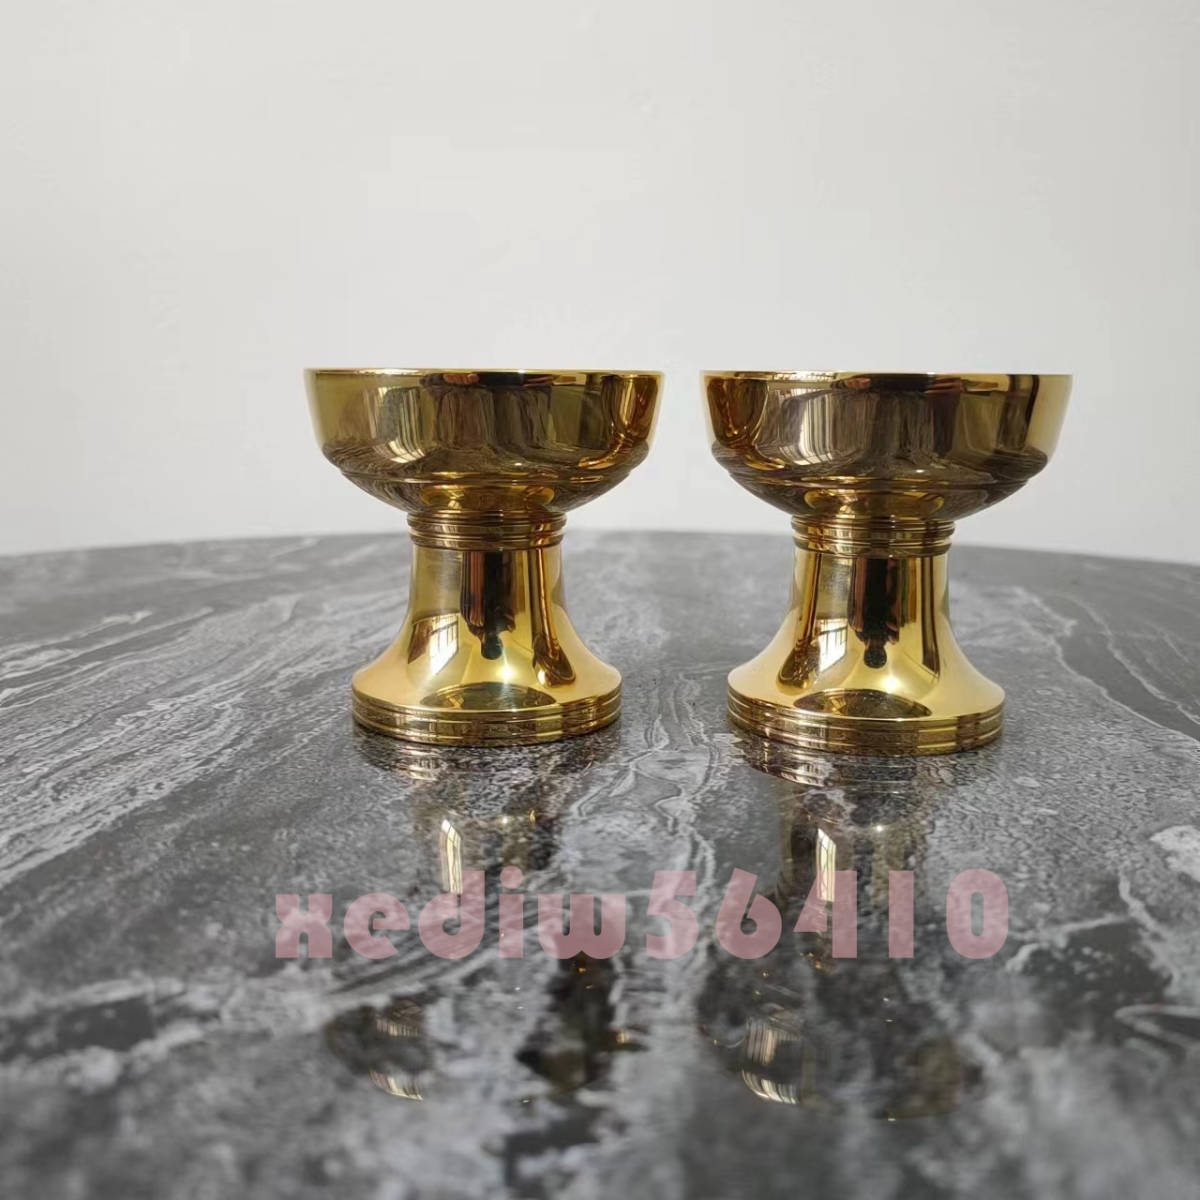 高品質★密教法具 仏器 1対 真鍮製 仏教美術 銅製